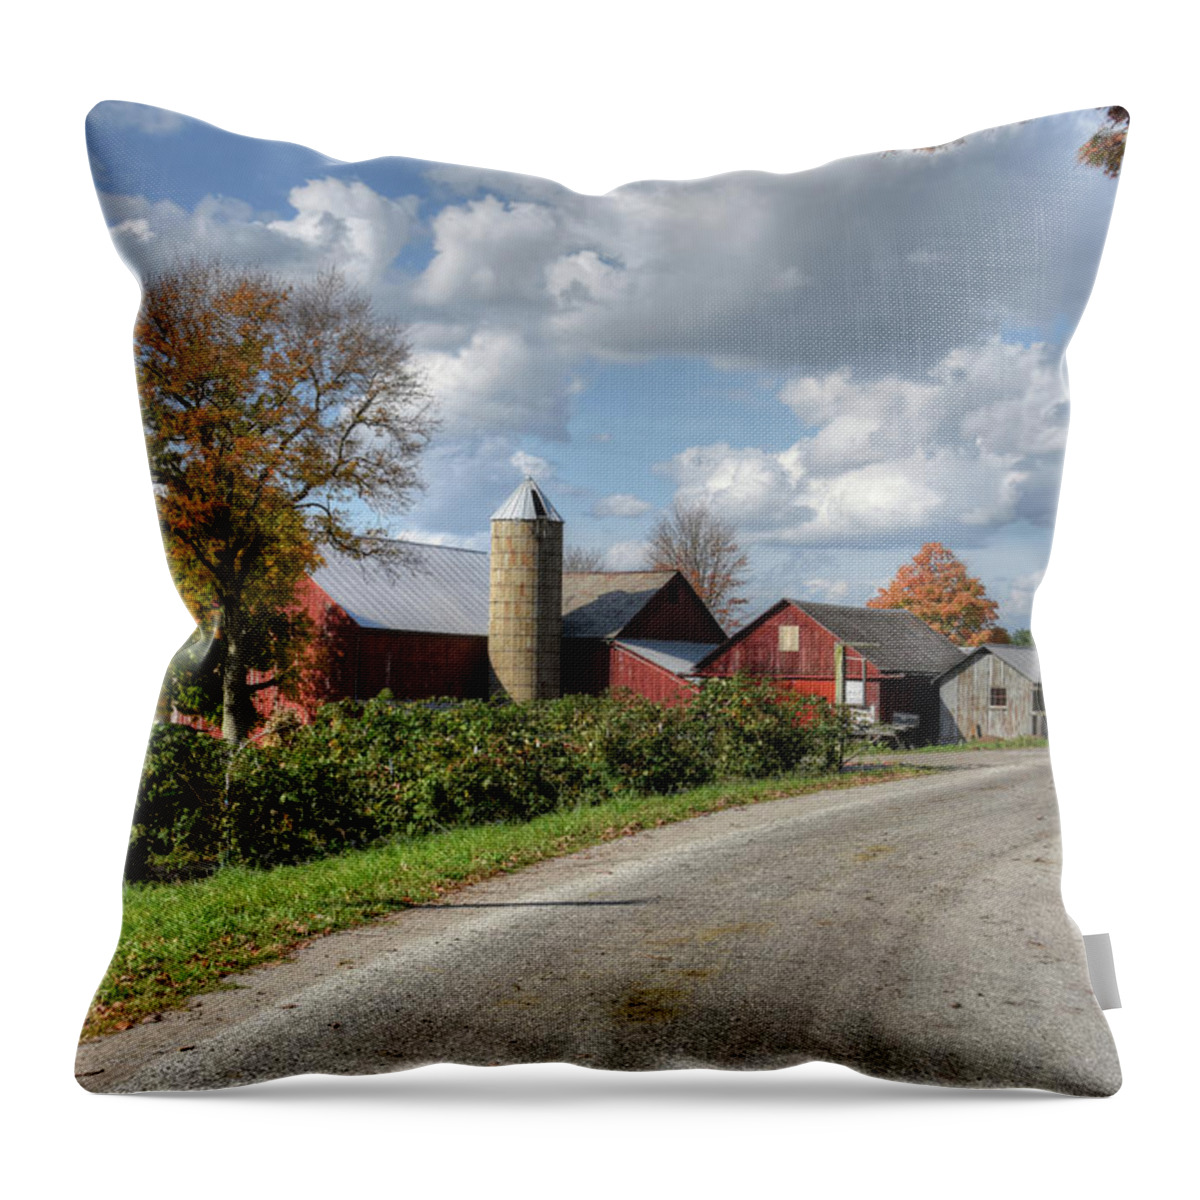 Farm Throw Pillow featuring the photograph Old Farm by Ann Bridges